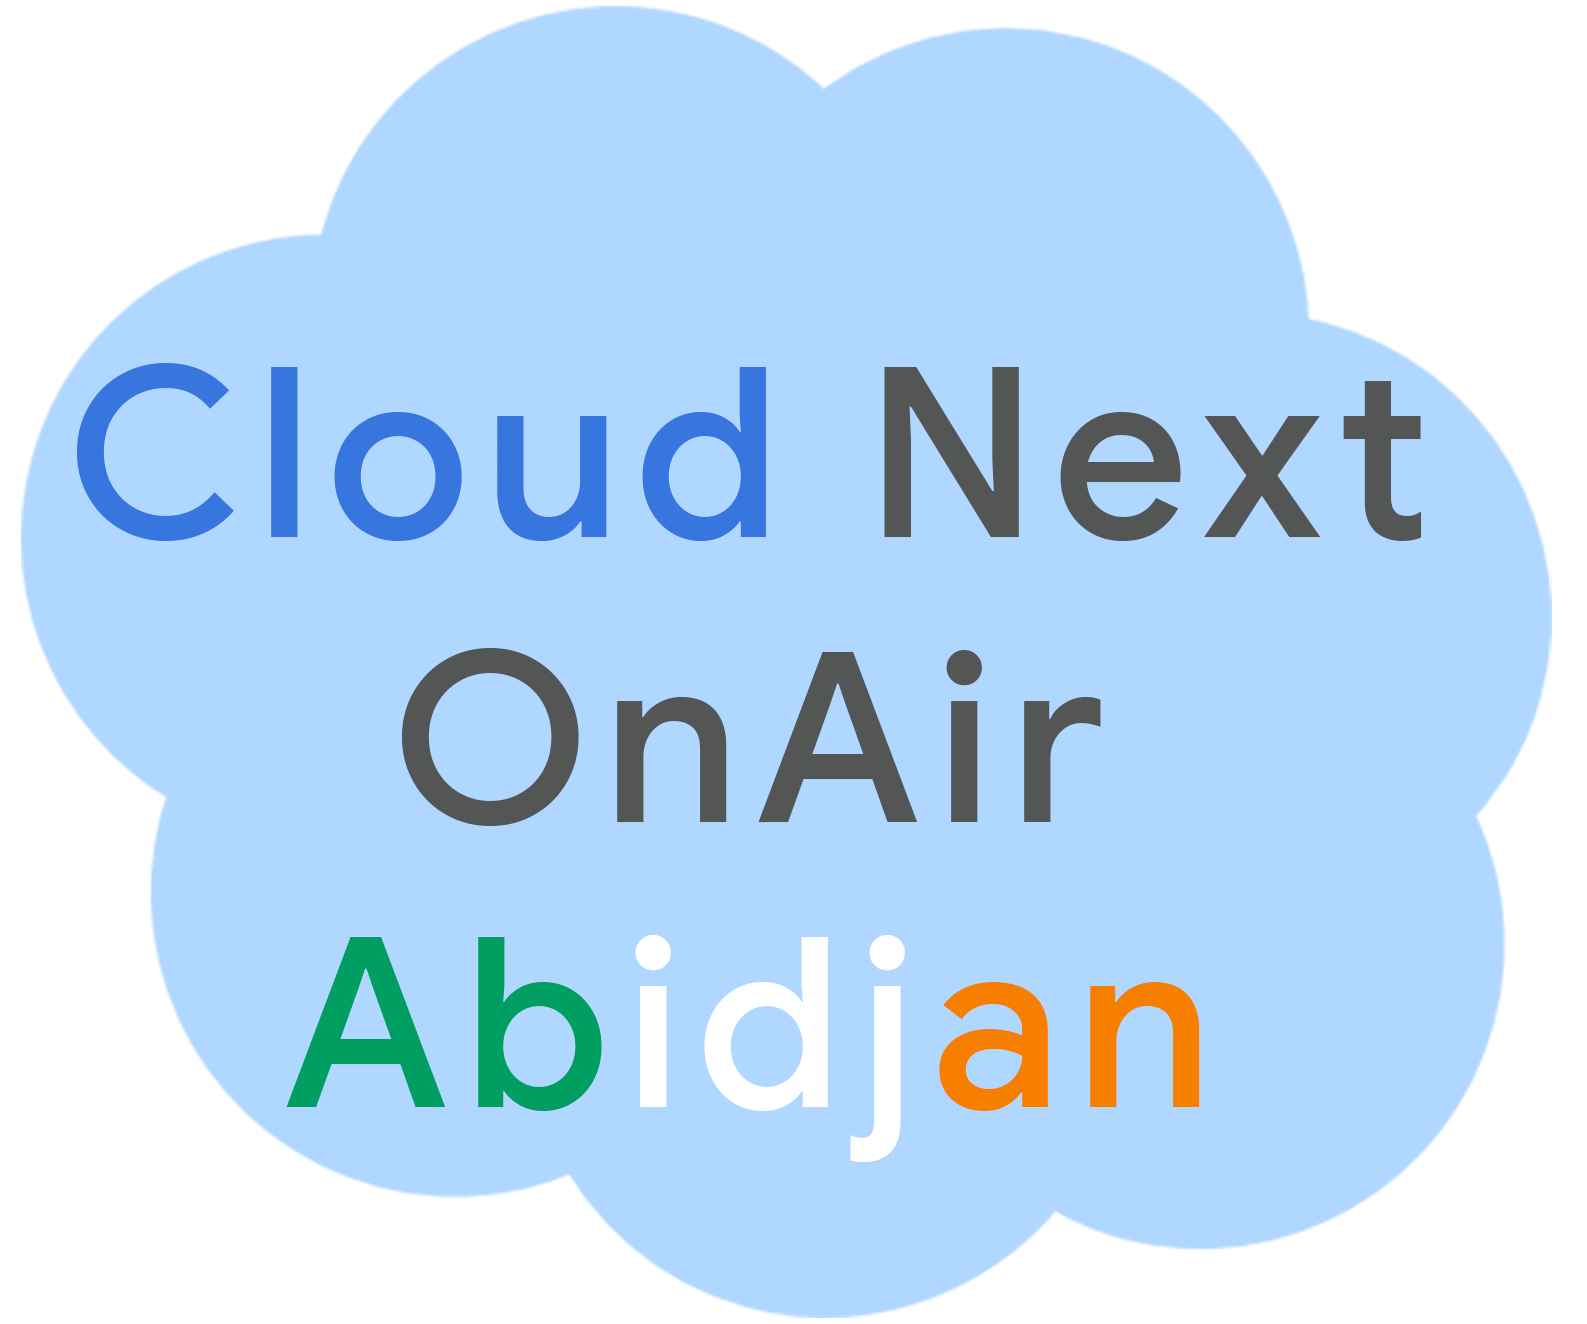 Cloud Next OnAir Abidjan